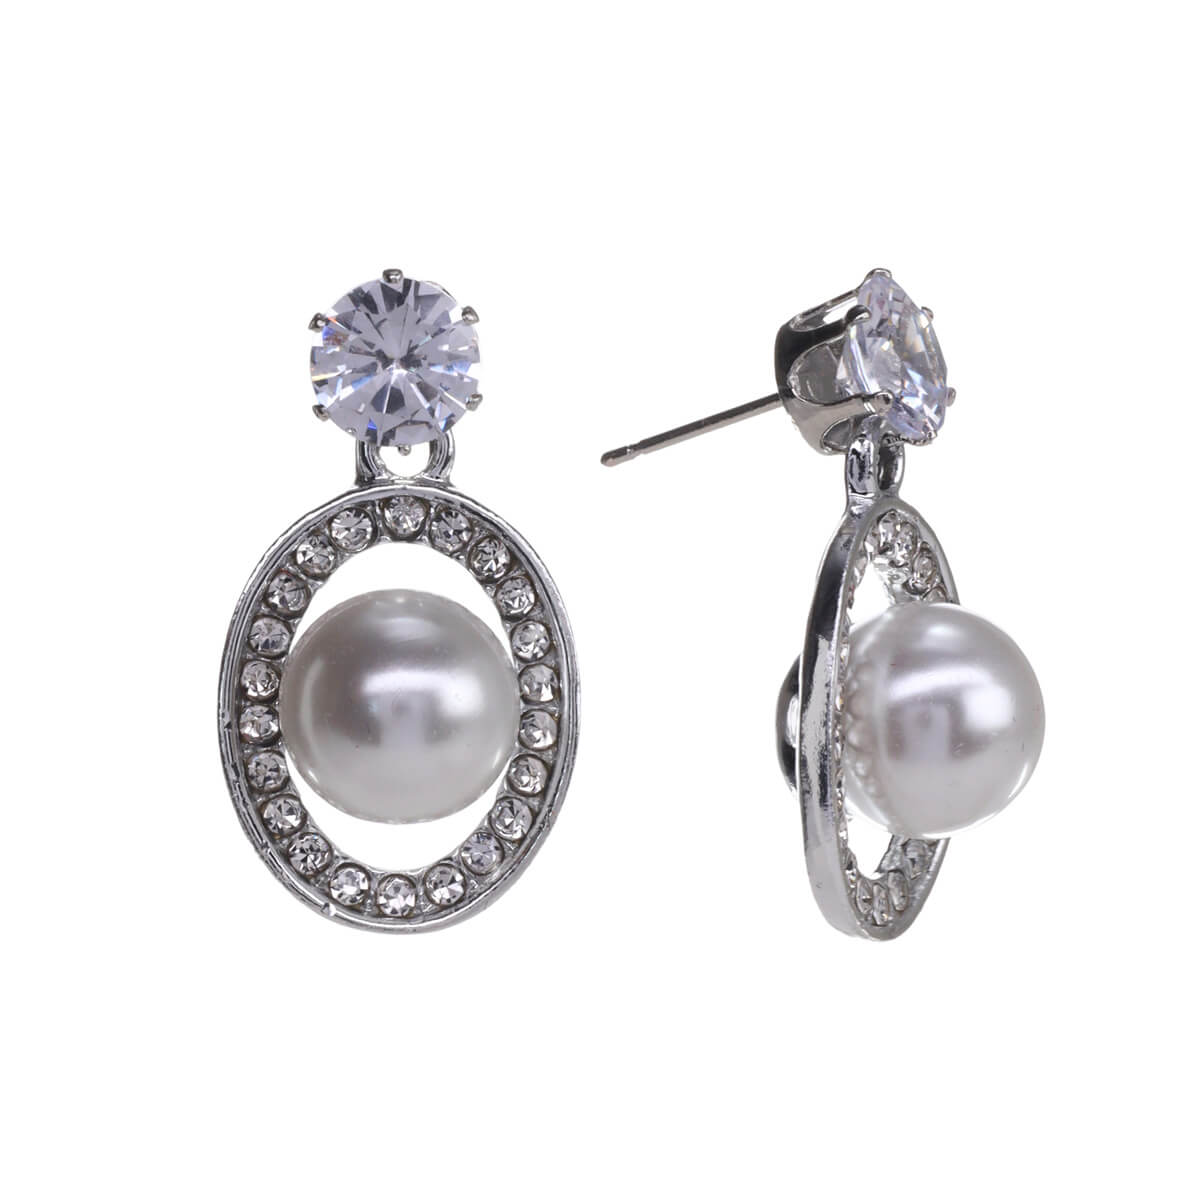 Oval pearl earrings